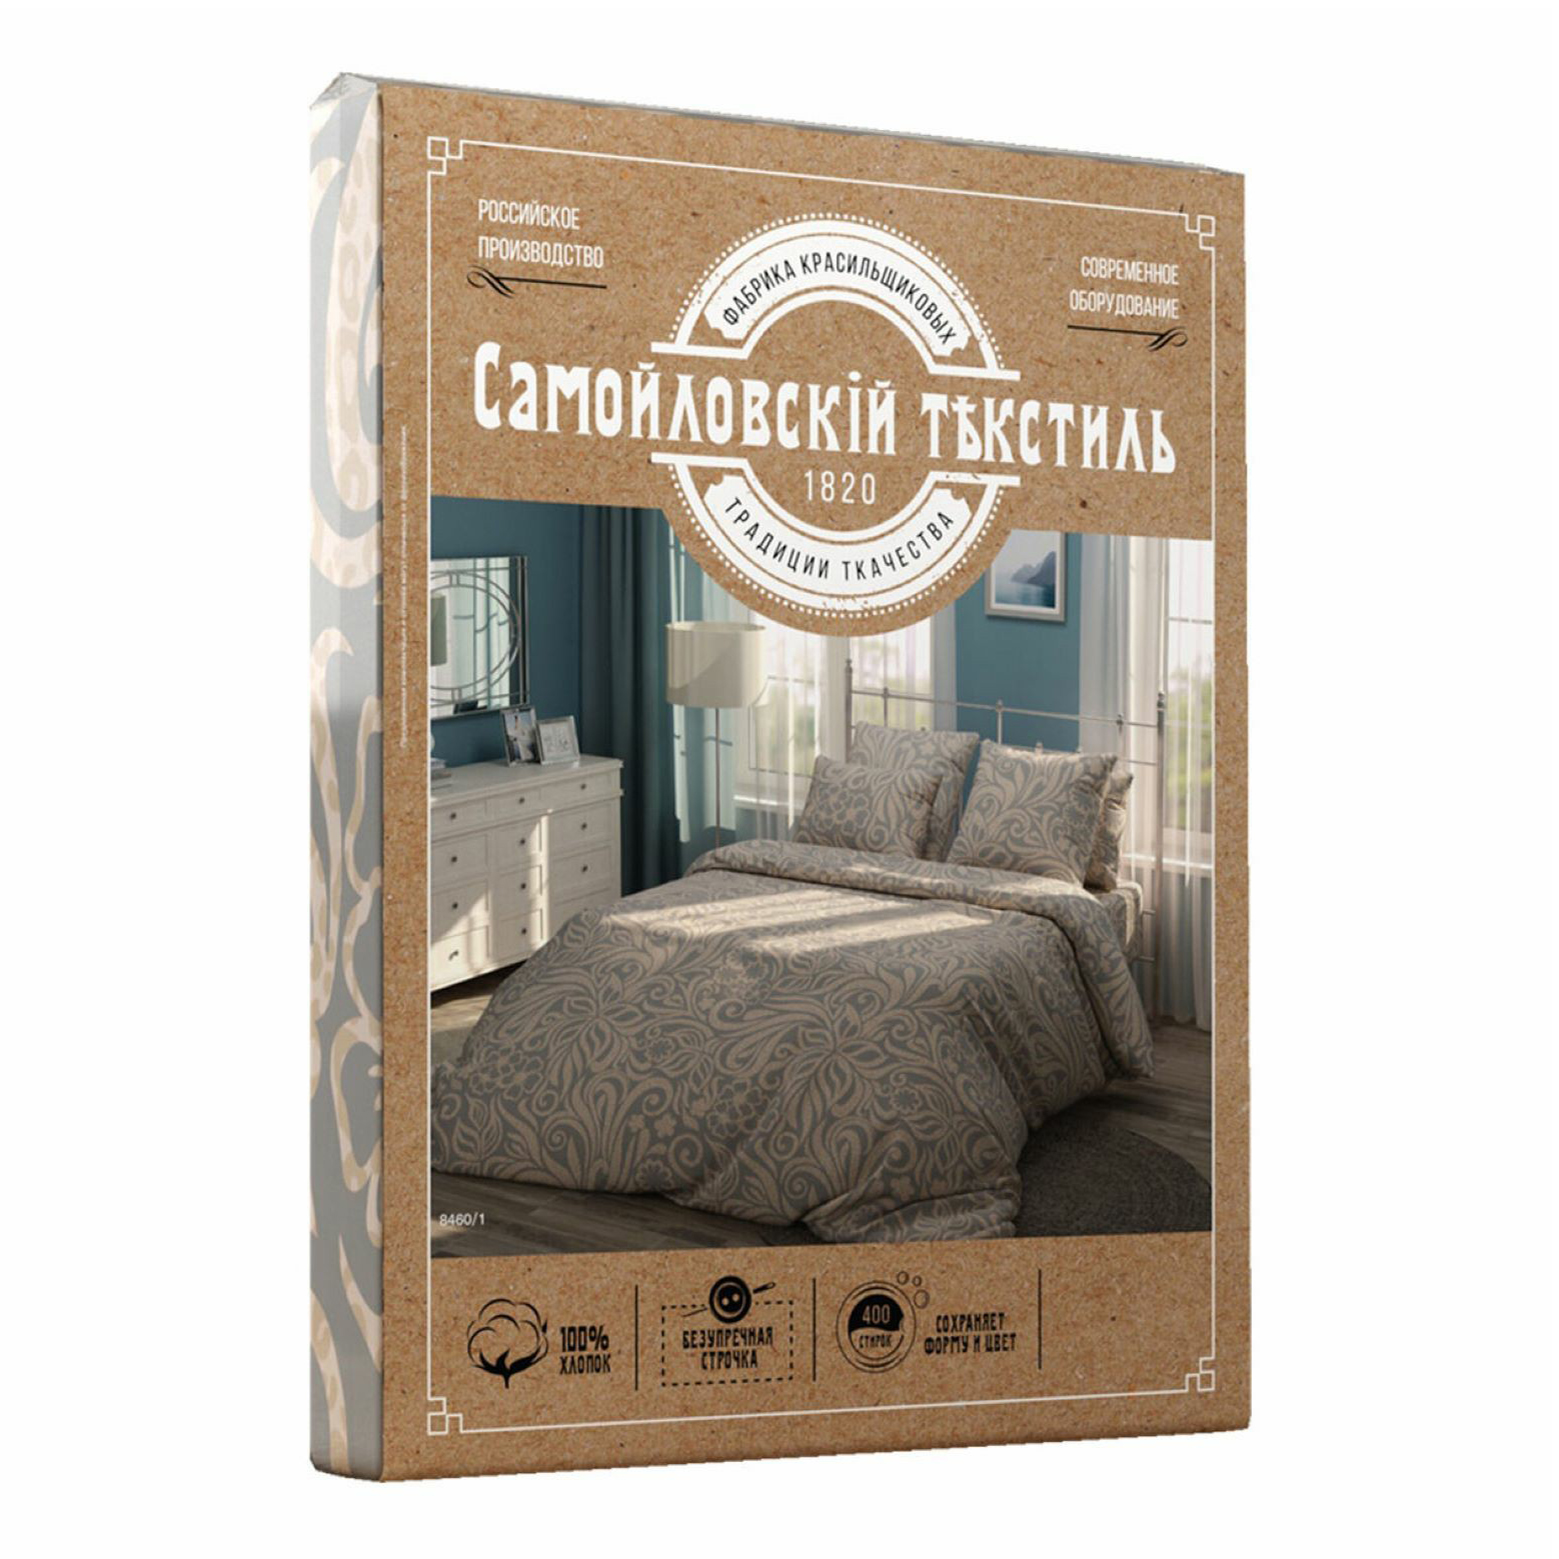 Комплект постельного белья Самойловский Текстиль 2 спальный бязь 70х70 см разноцветный